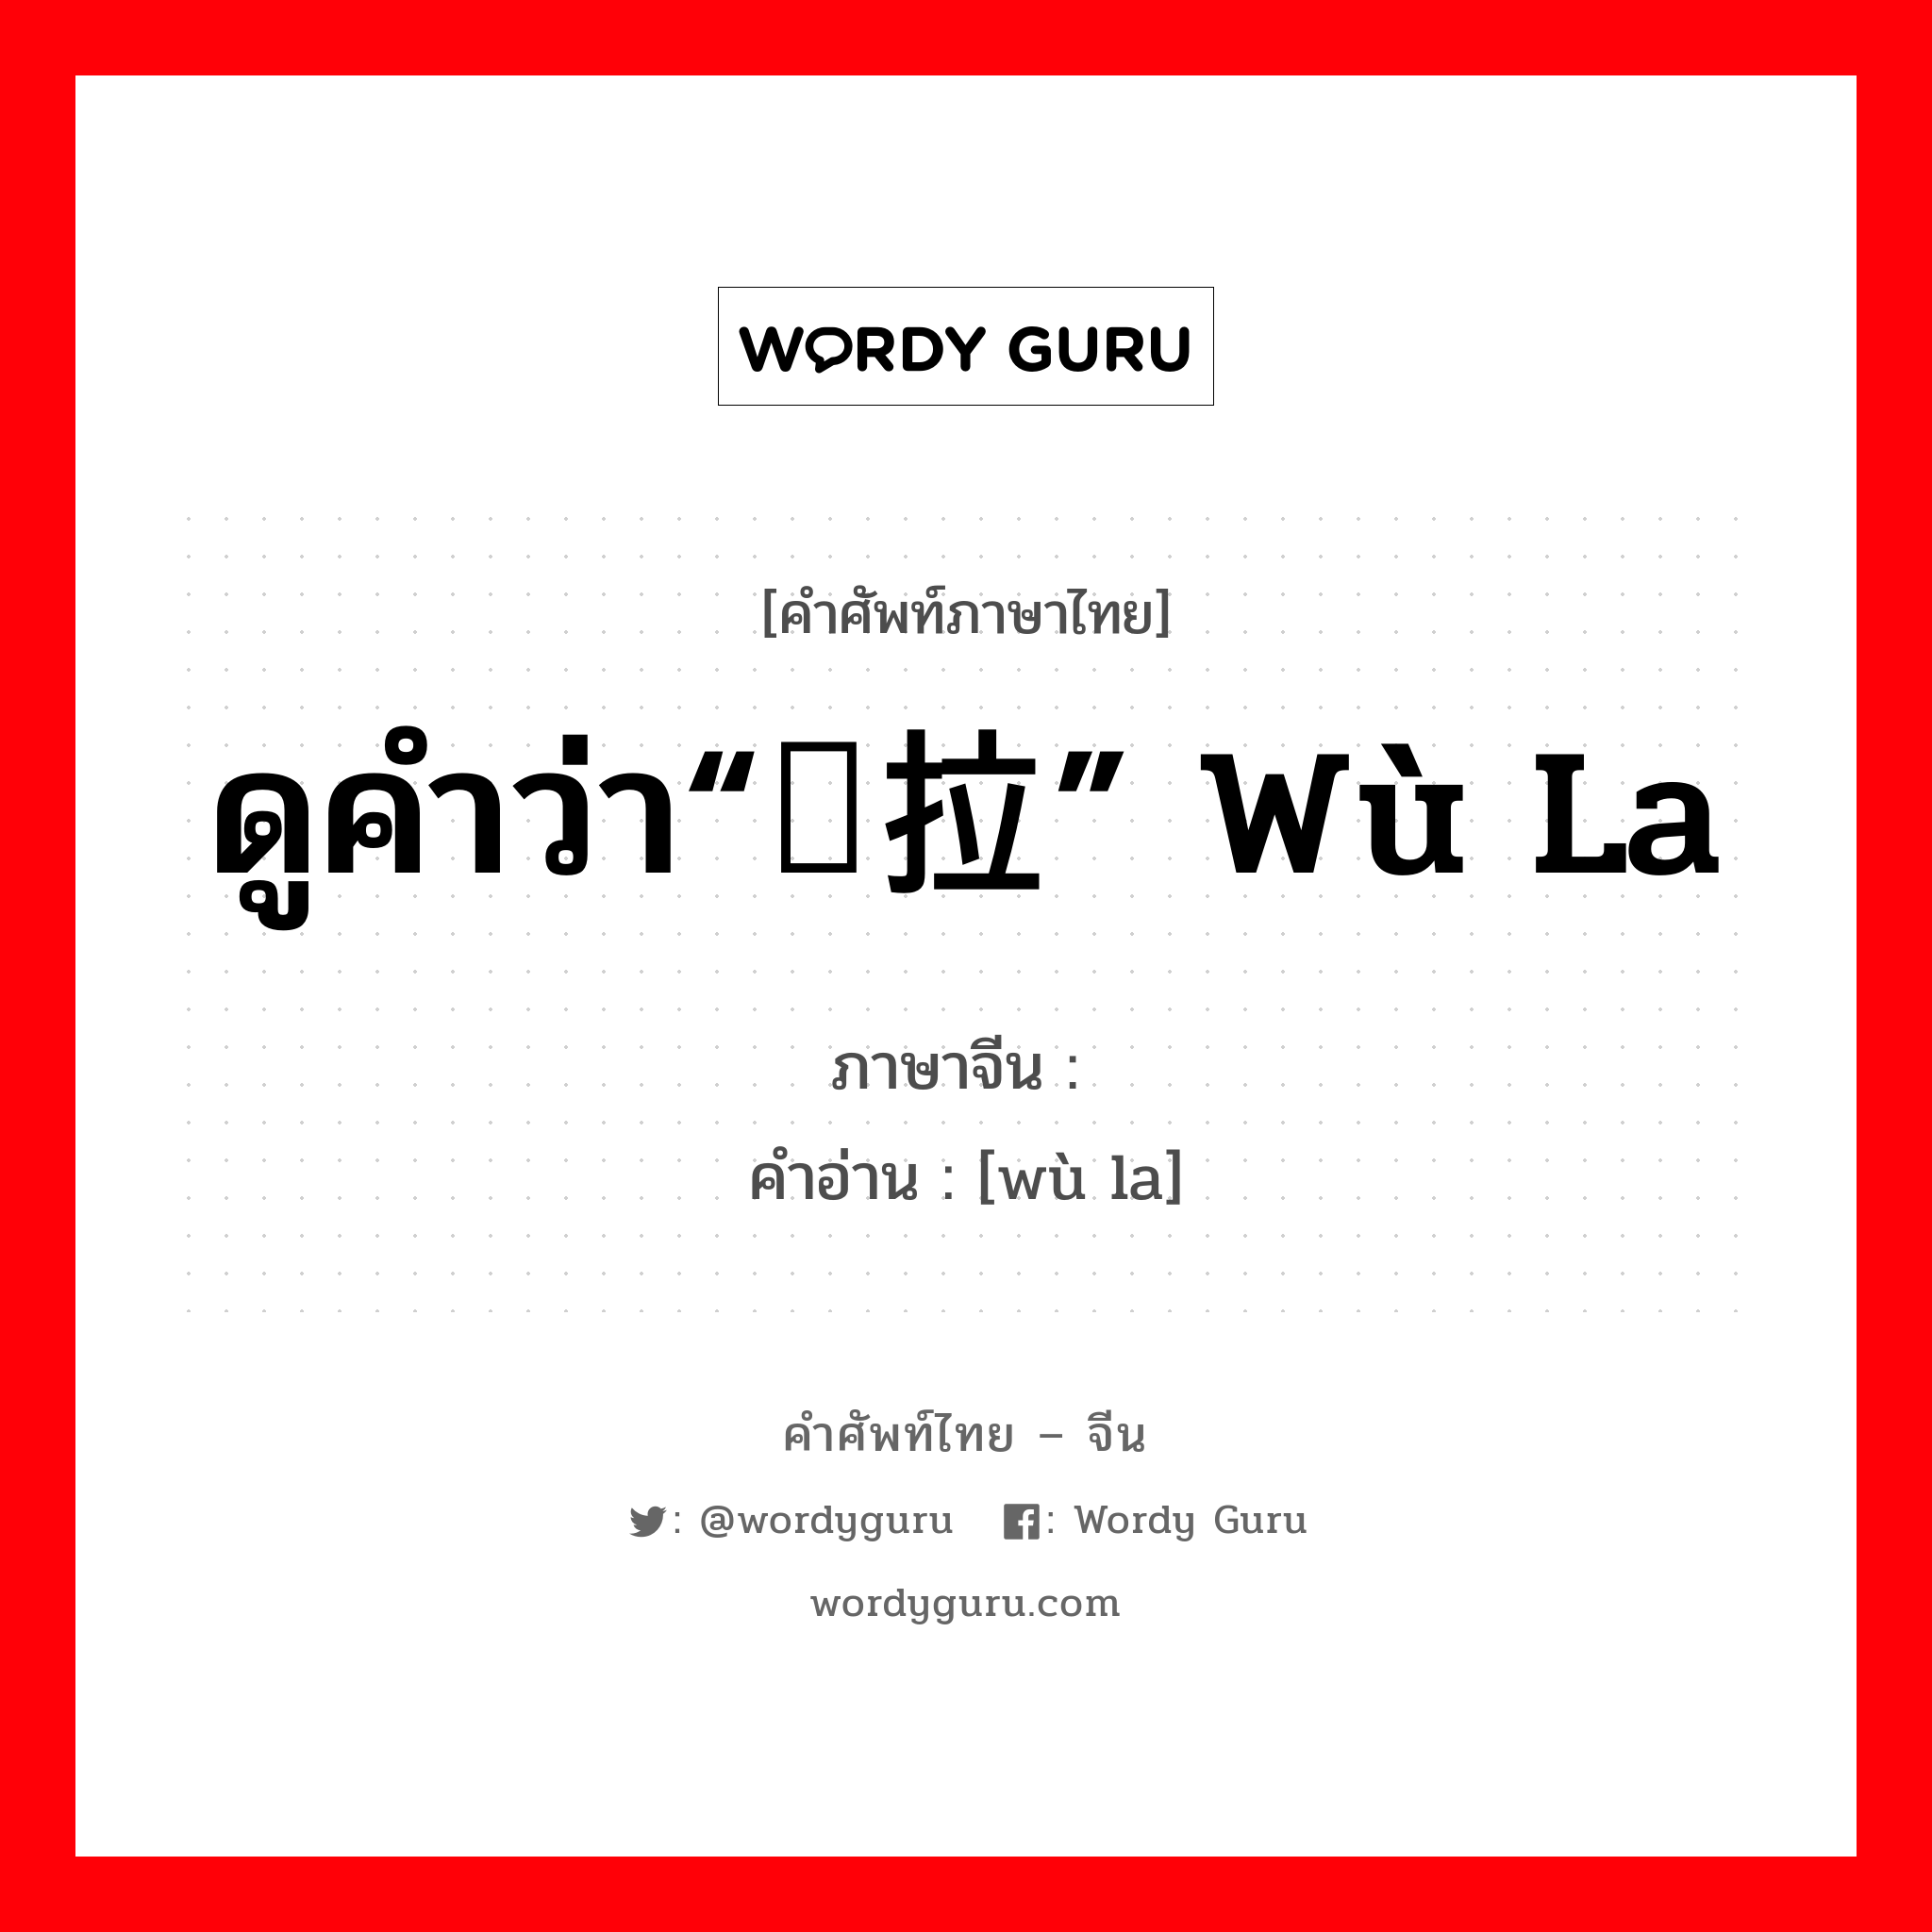 ดูคำว่า“乌拉” wū lā ภาษาจีนคืออะไร, คำศัพท์ภาษาไทย - จีน ดูคำว่า“乌拉” wù la ภาษาจีน 靰鞡 คำอ่าน [wù la]